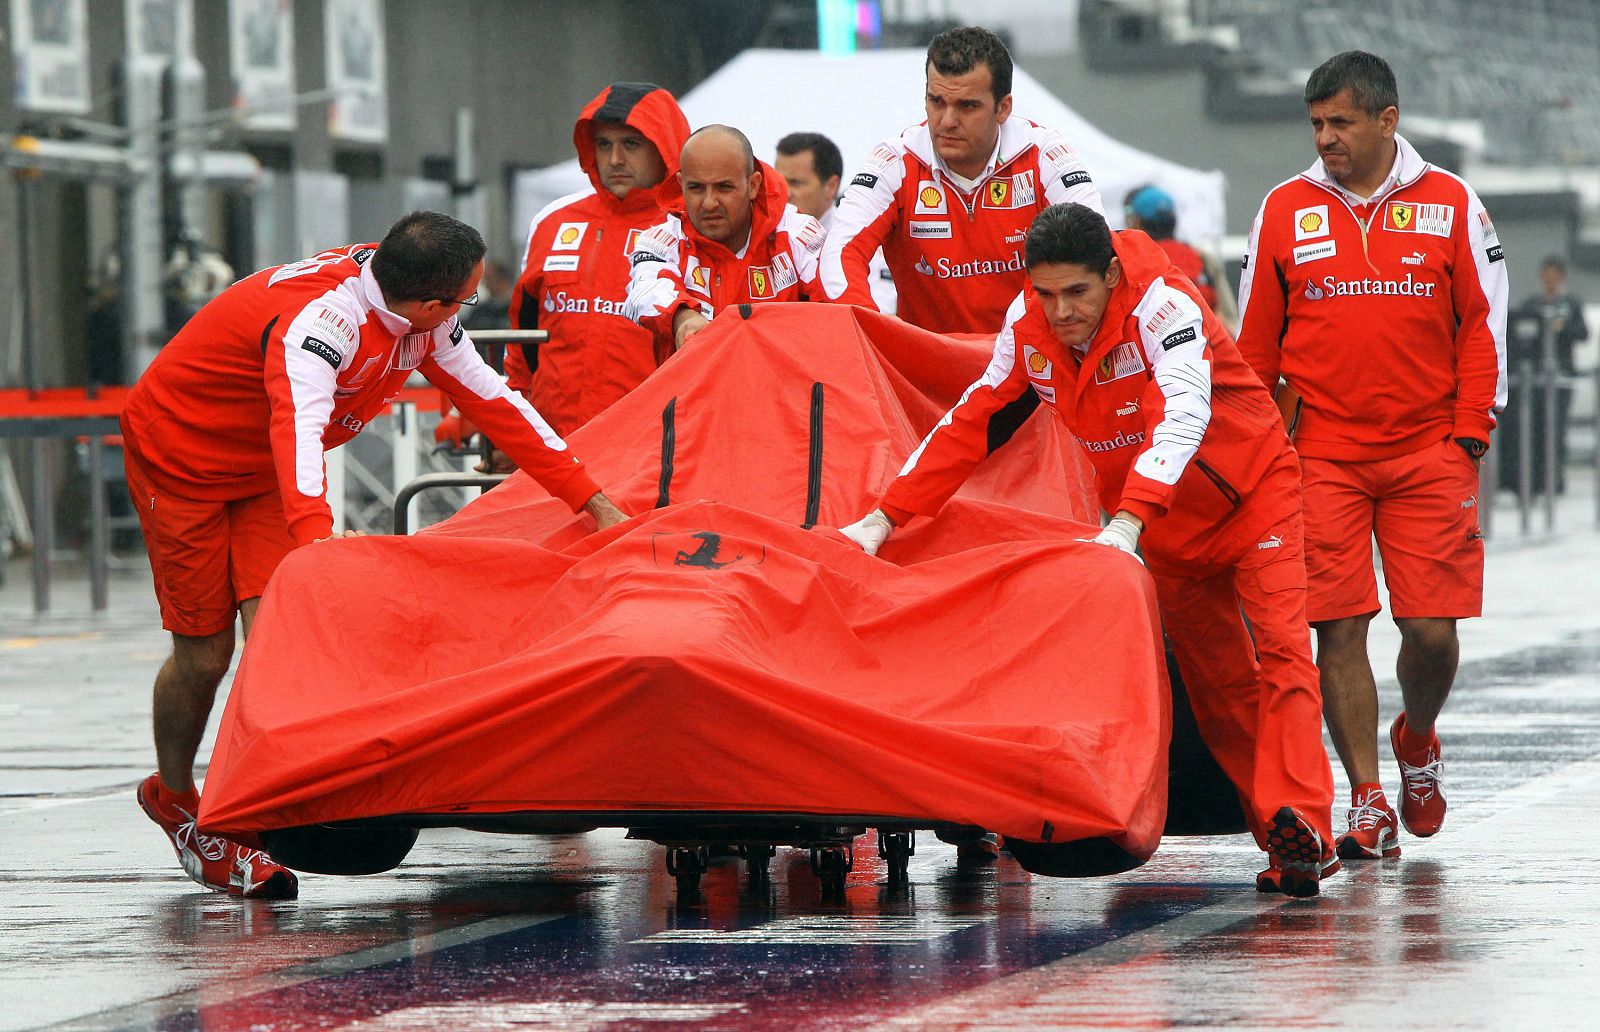 El equipo Ferrari prepara el GP de Canadá.